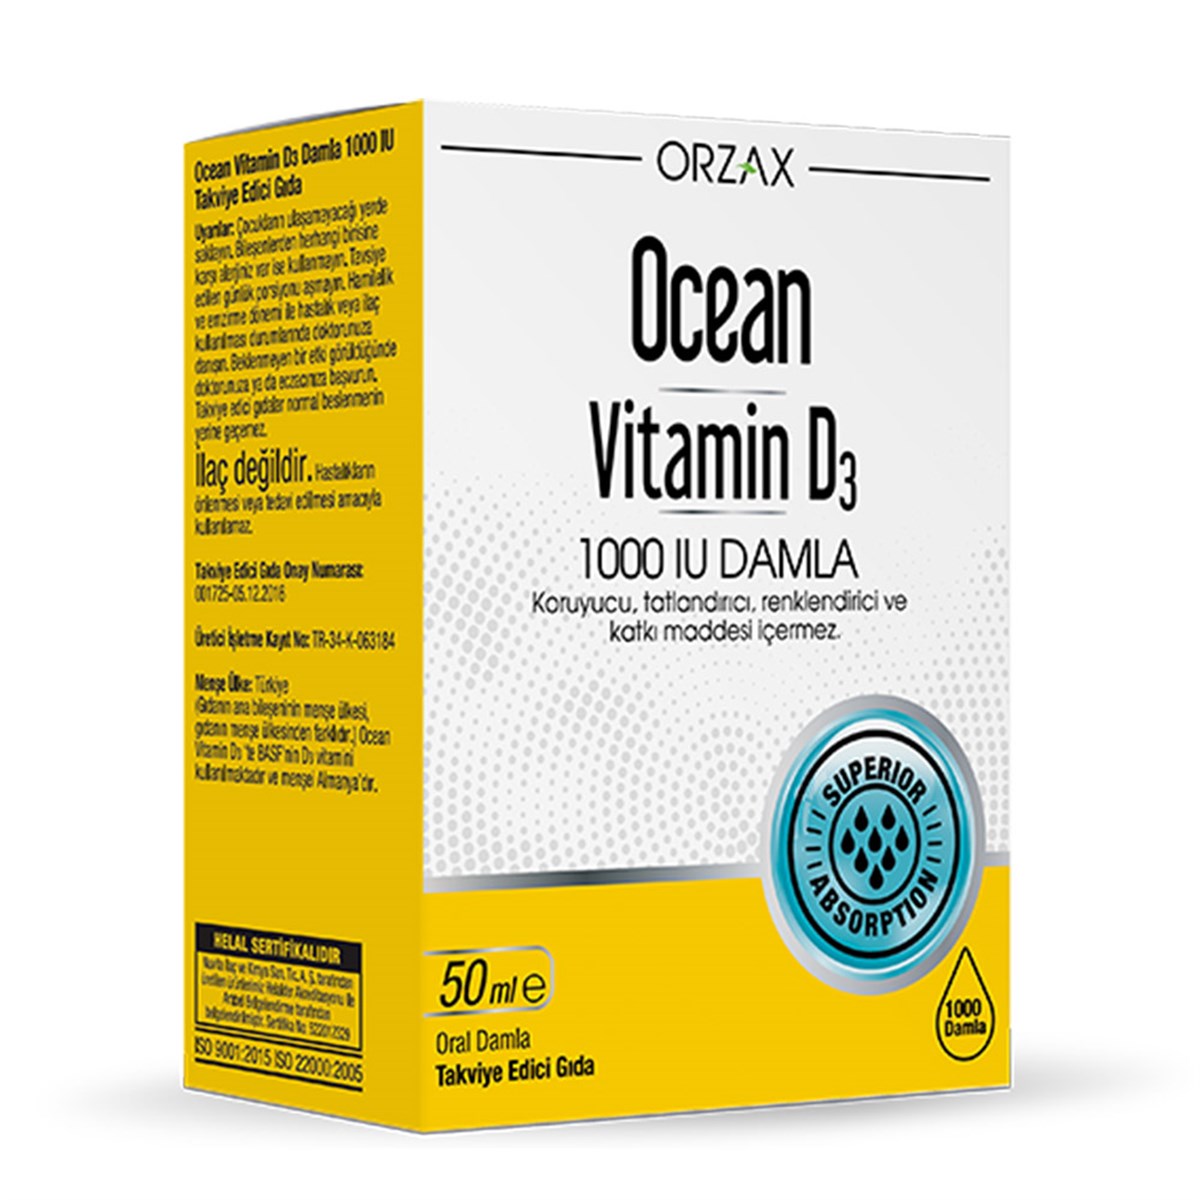 Ocean Vitamin D3 1000 IU 50 ml Damla Fiyatı 64,50 TL Vitamin Dolabı